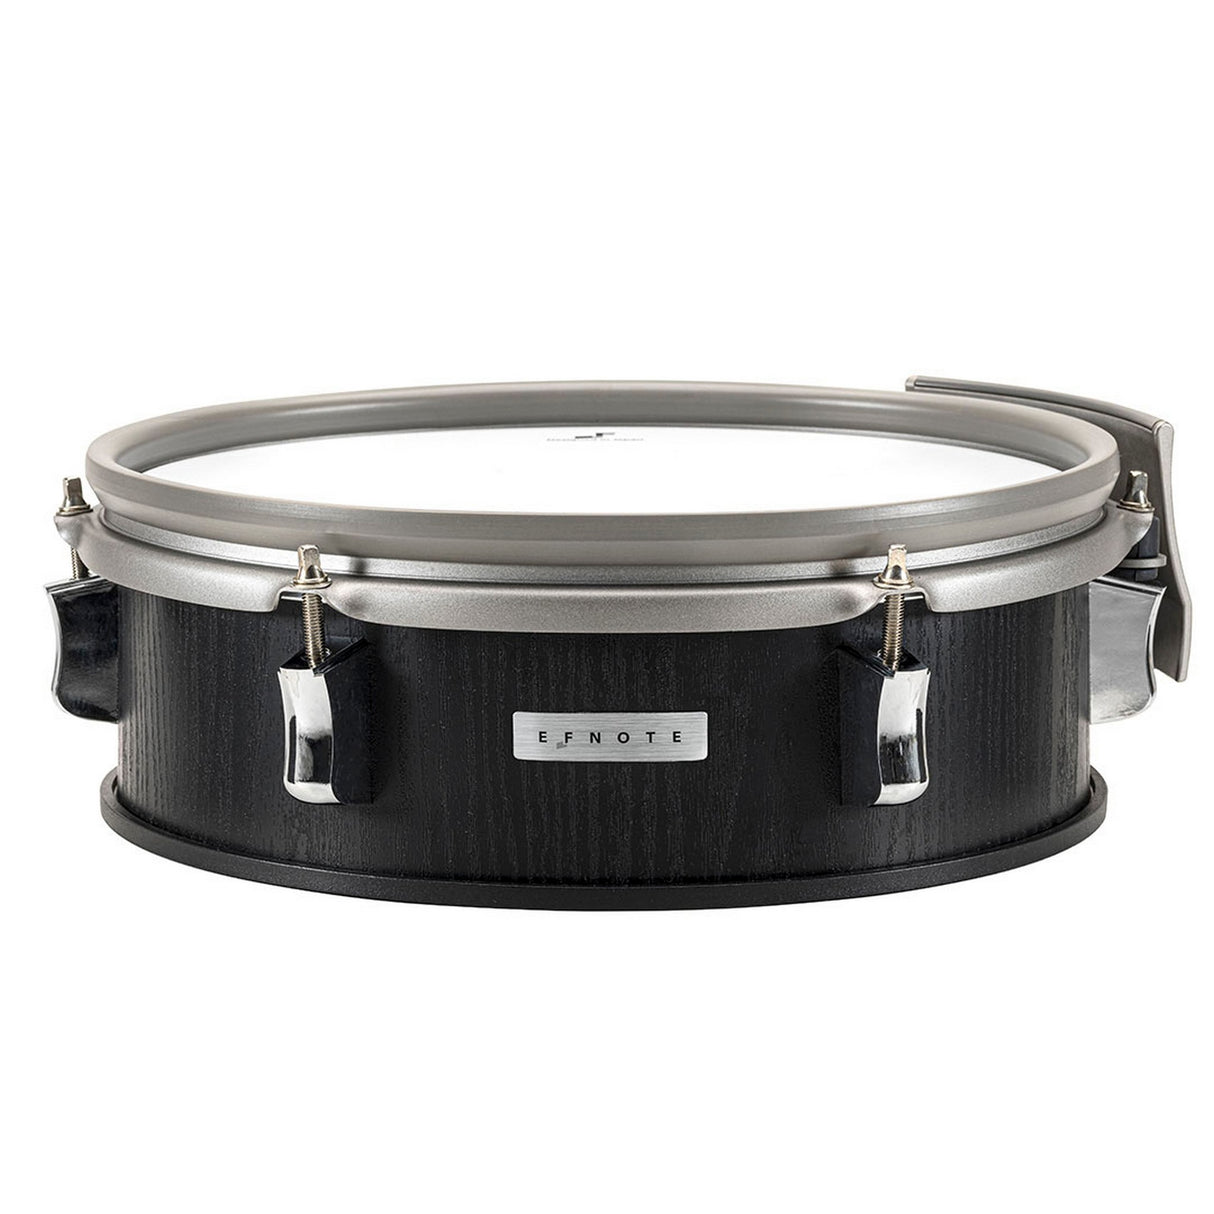 EFNOTE 3X Acoustic Designed Electronic Drum Set, Black Oak Wrap